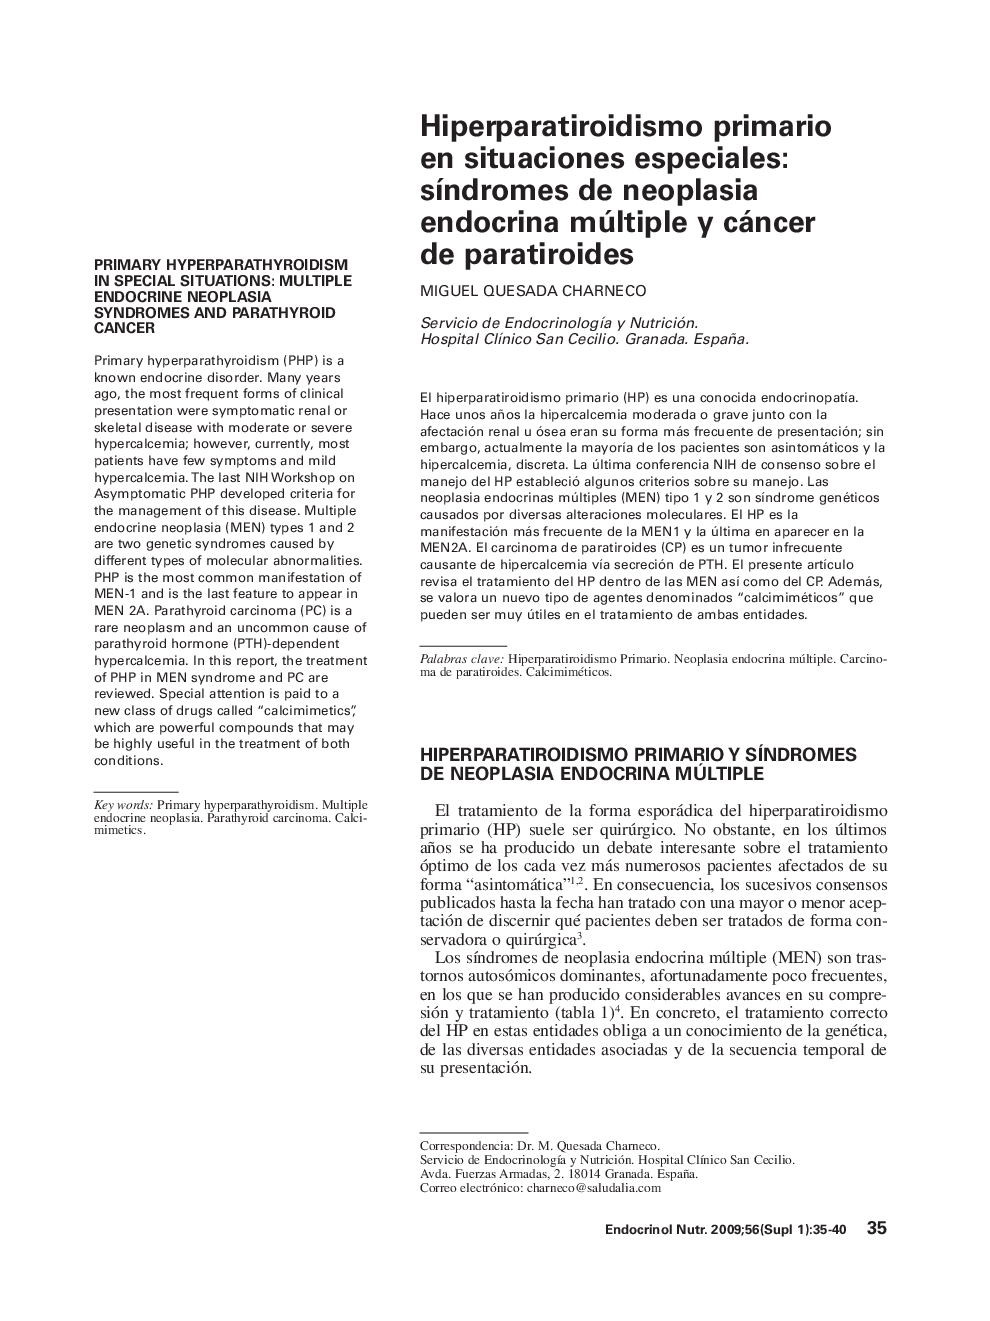 Hiperparatiroidismo primario en situaciones especiales: síndromes de neoplasia endocrina múltiple y cáncer de paratiroides